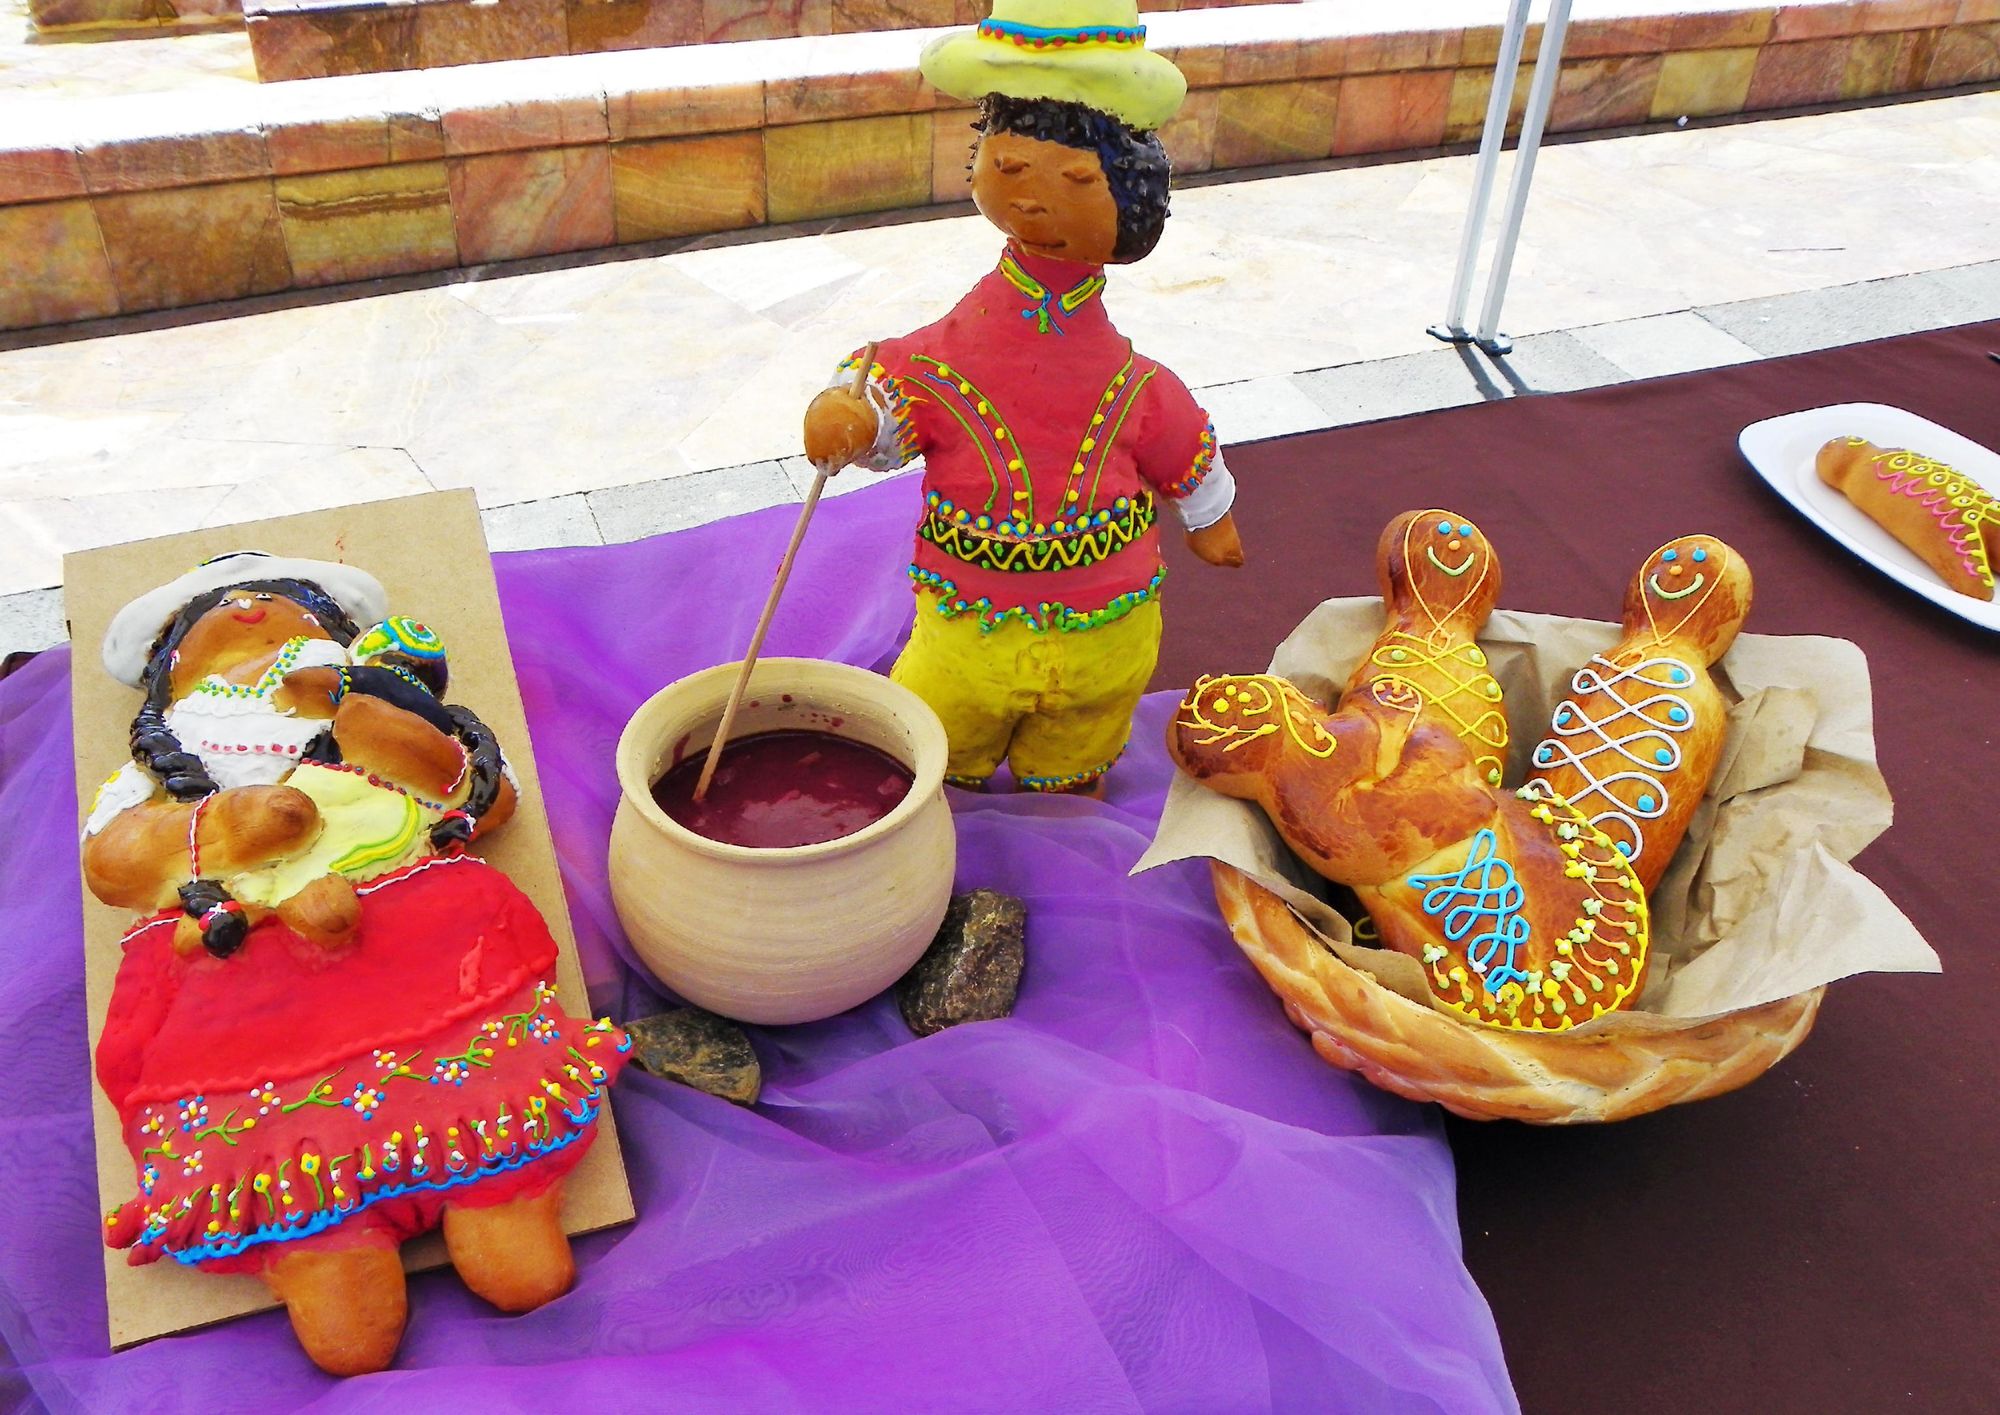 A display of guaguas de pan and colada morada for Dia de los Difuntos in Ecuador. Photo: Getty.